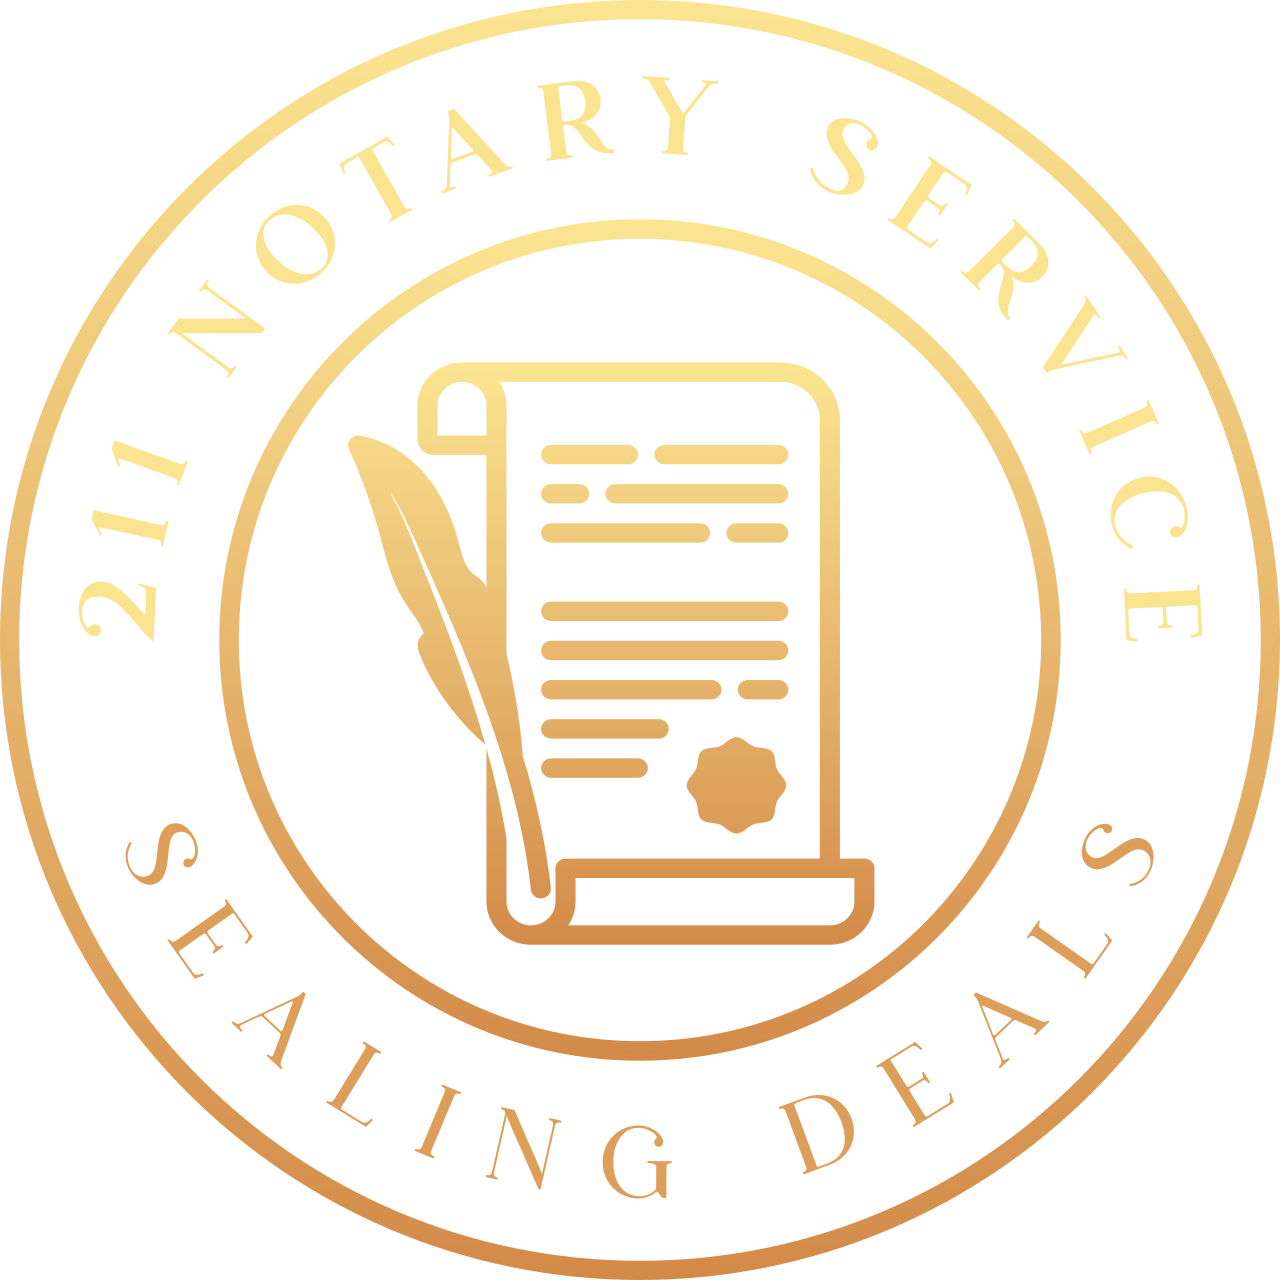 211 Notary Service's logo